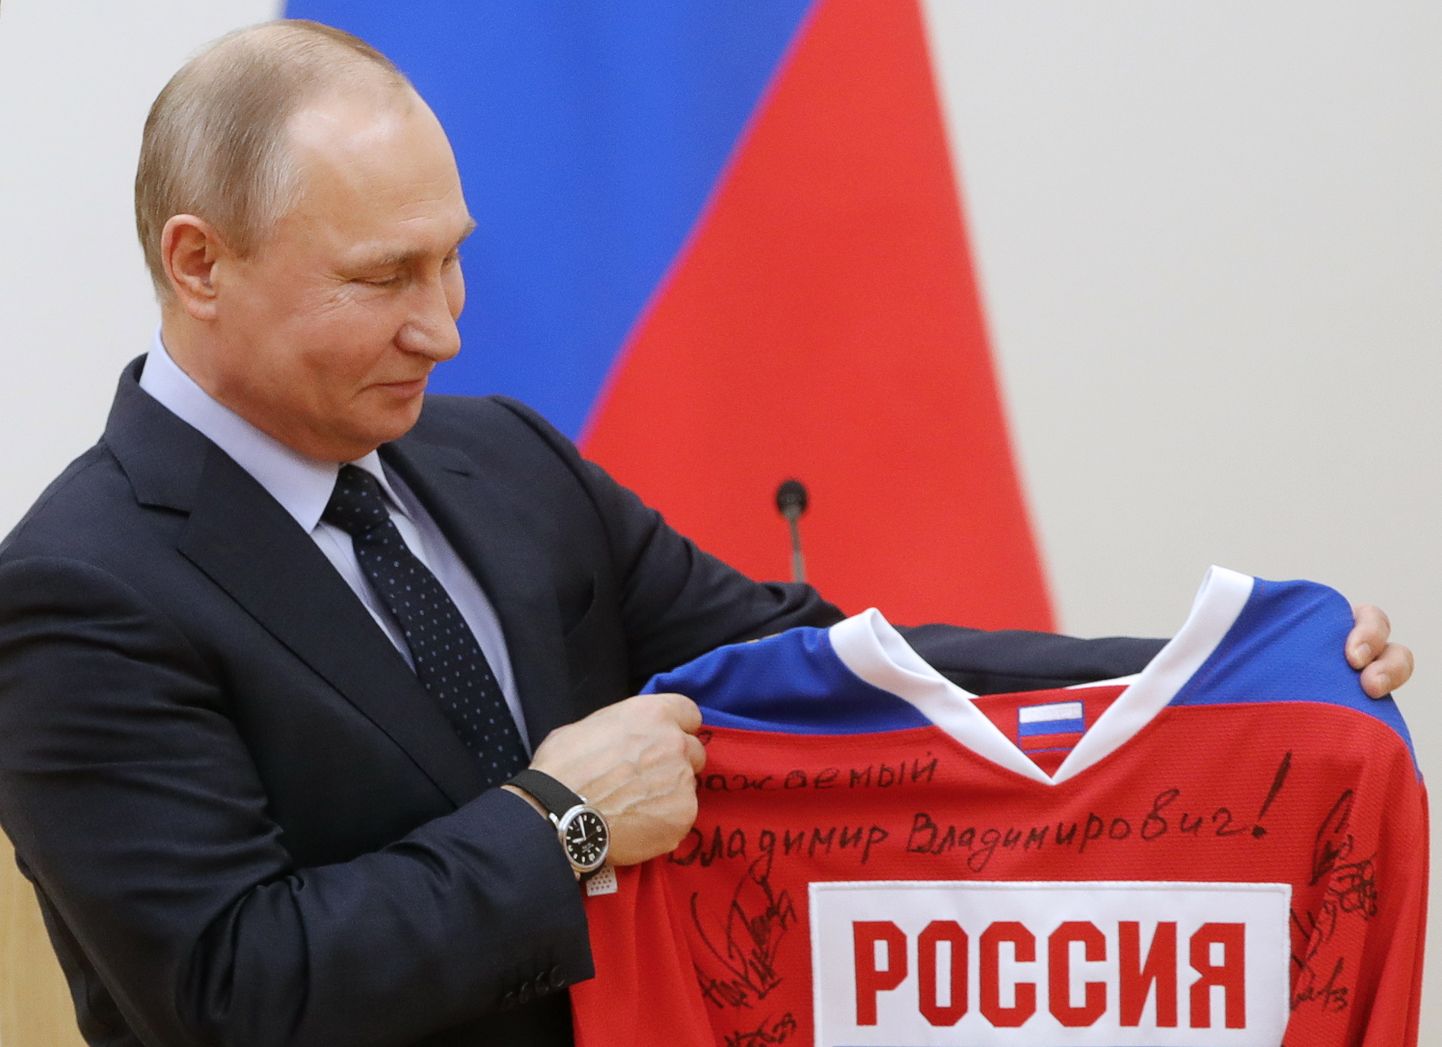 Vladimir Putin armastab oma riigi spordisaavutusi. Fotol poseerib ta Pyeongchangis olümpiakulla võitnud hokimeeskonnalt kingituseks saadud särgiga.